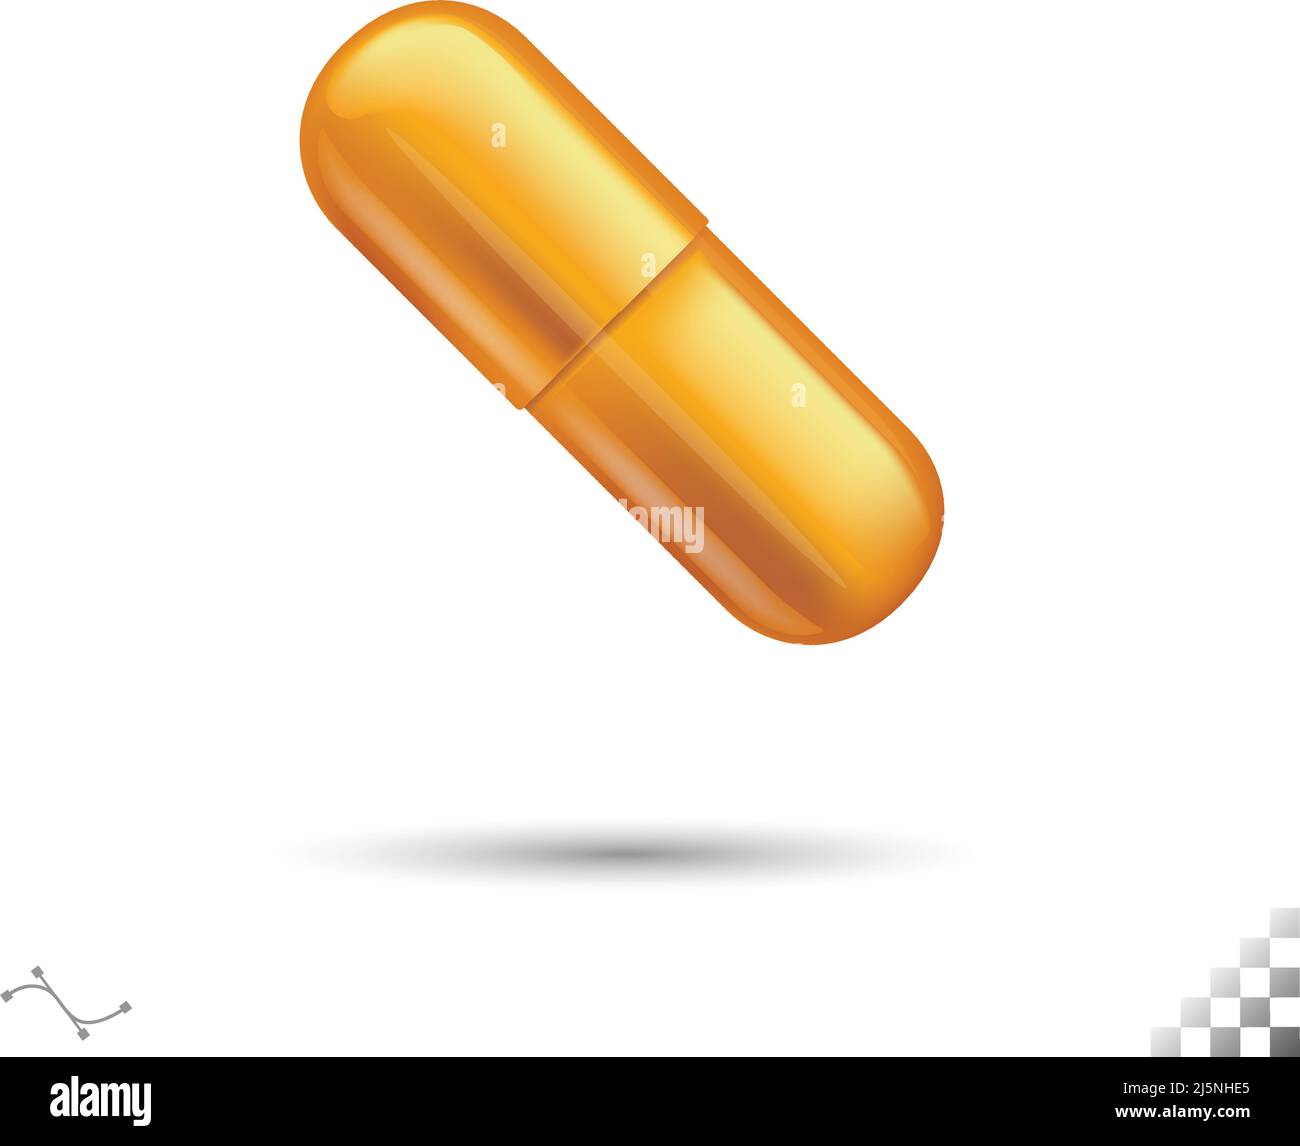 vector 3d modèle jaune or médical ou symbole d'icône de pilule de vitamine avec coins arrondis brillants et ombrés Illustration de Vecteur